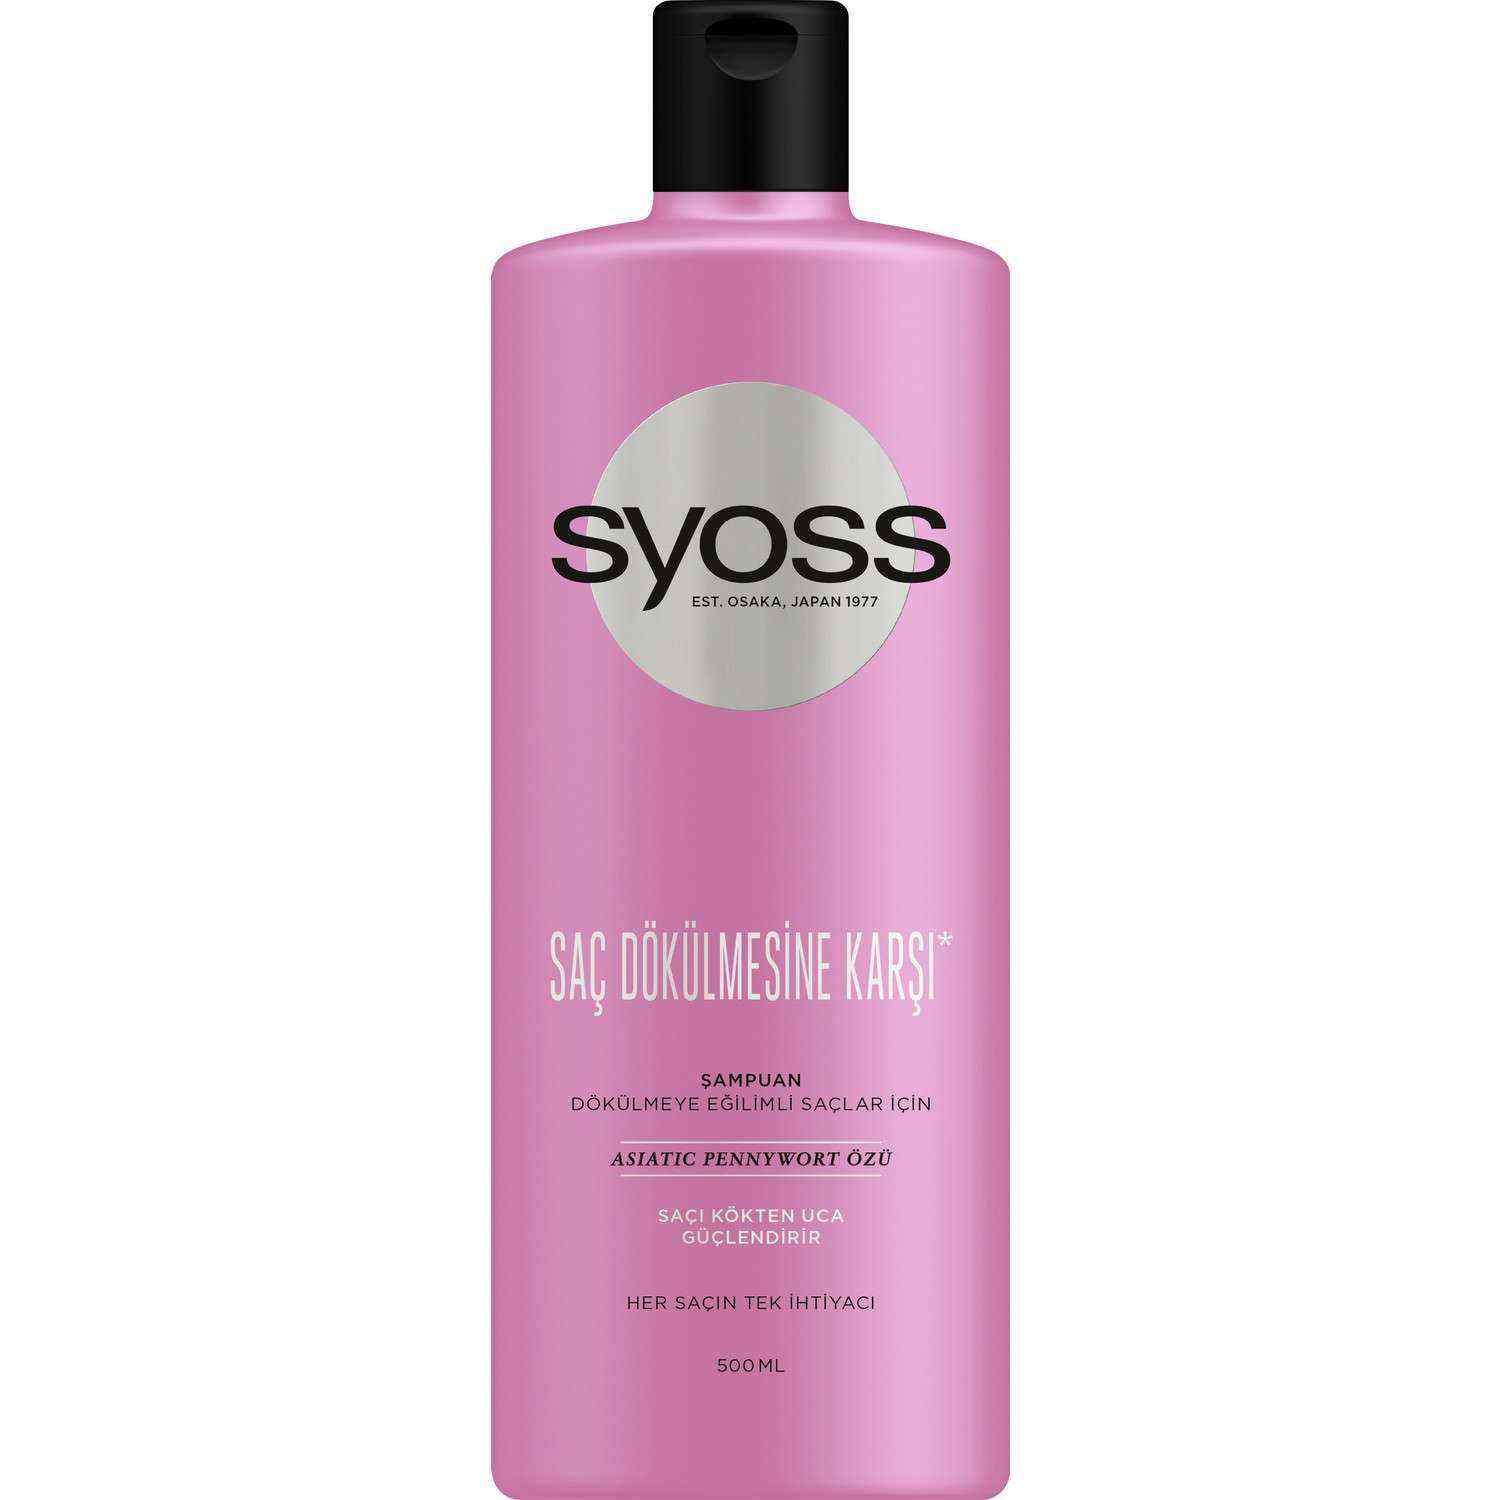 Syoss Saç Dökülmesine Karşı  500 ml Şampuan